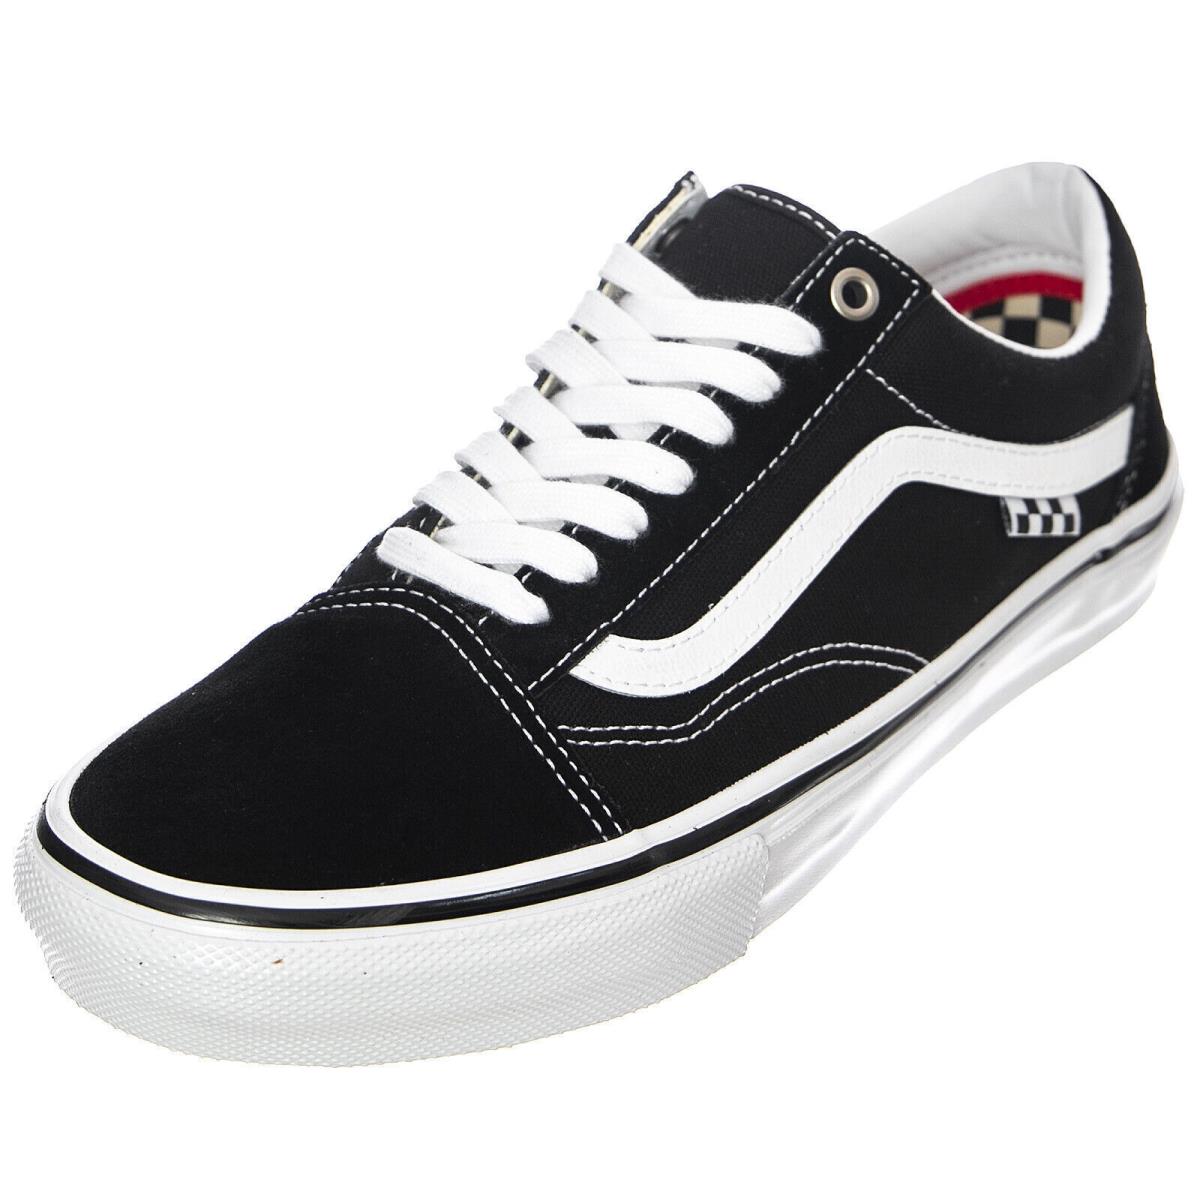 Vans Skate Old Skool Sneakers Black/white Classic Men`s Size 6.0 Women 7.5 - Black/White